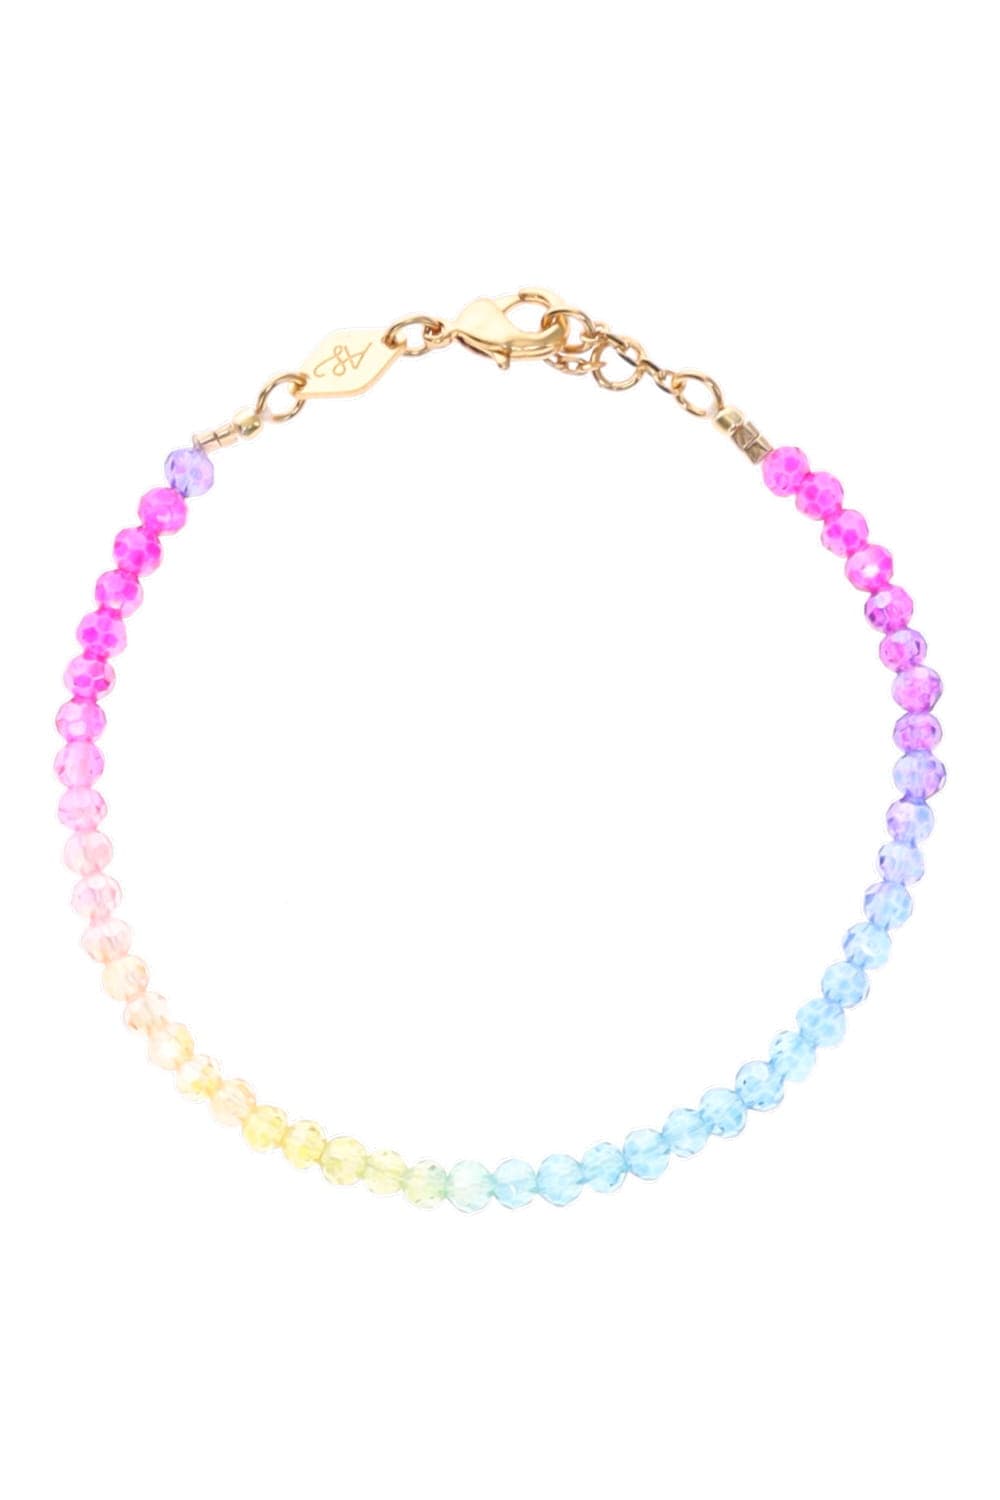 Anni Lu Seaside Shimmer Rainbow Beaded Bracelet